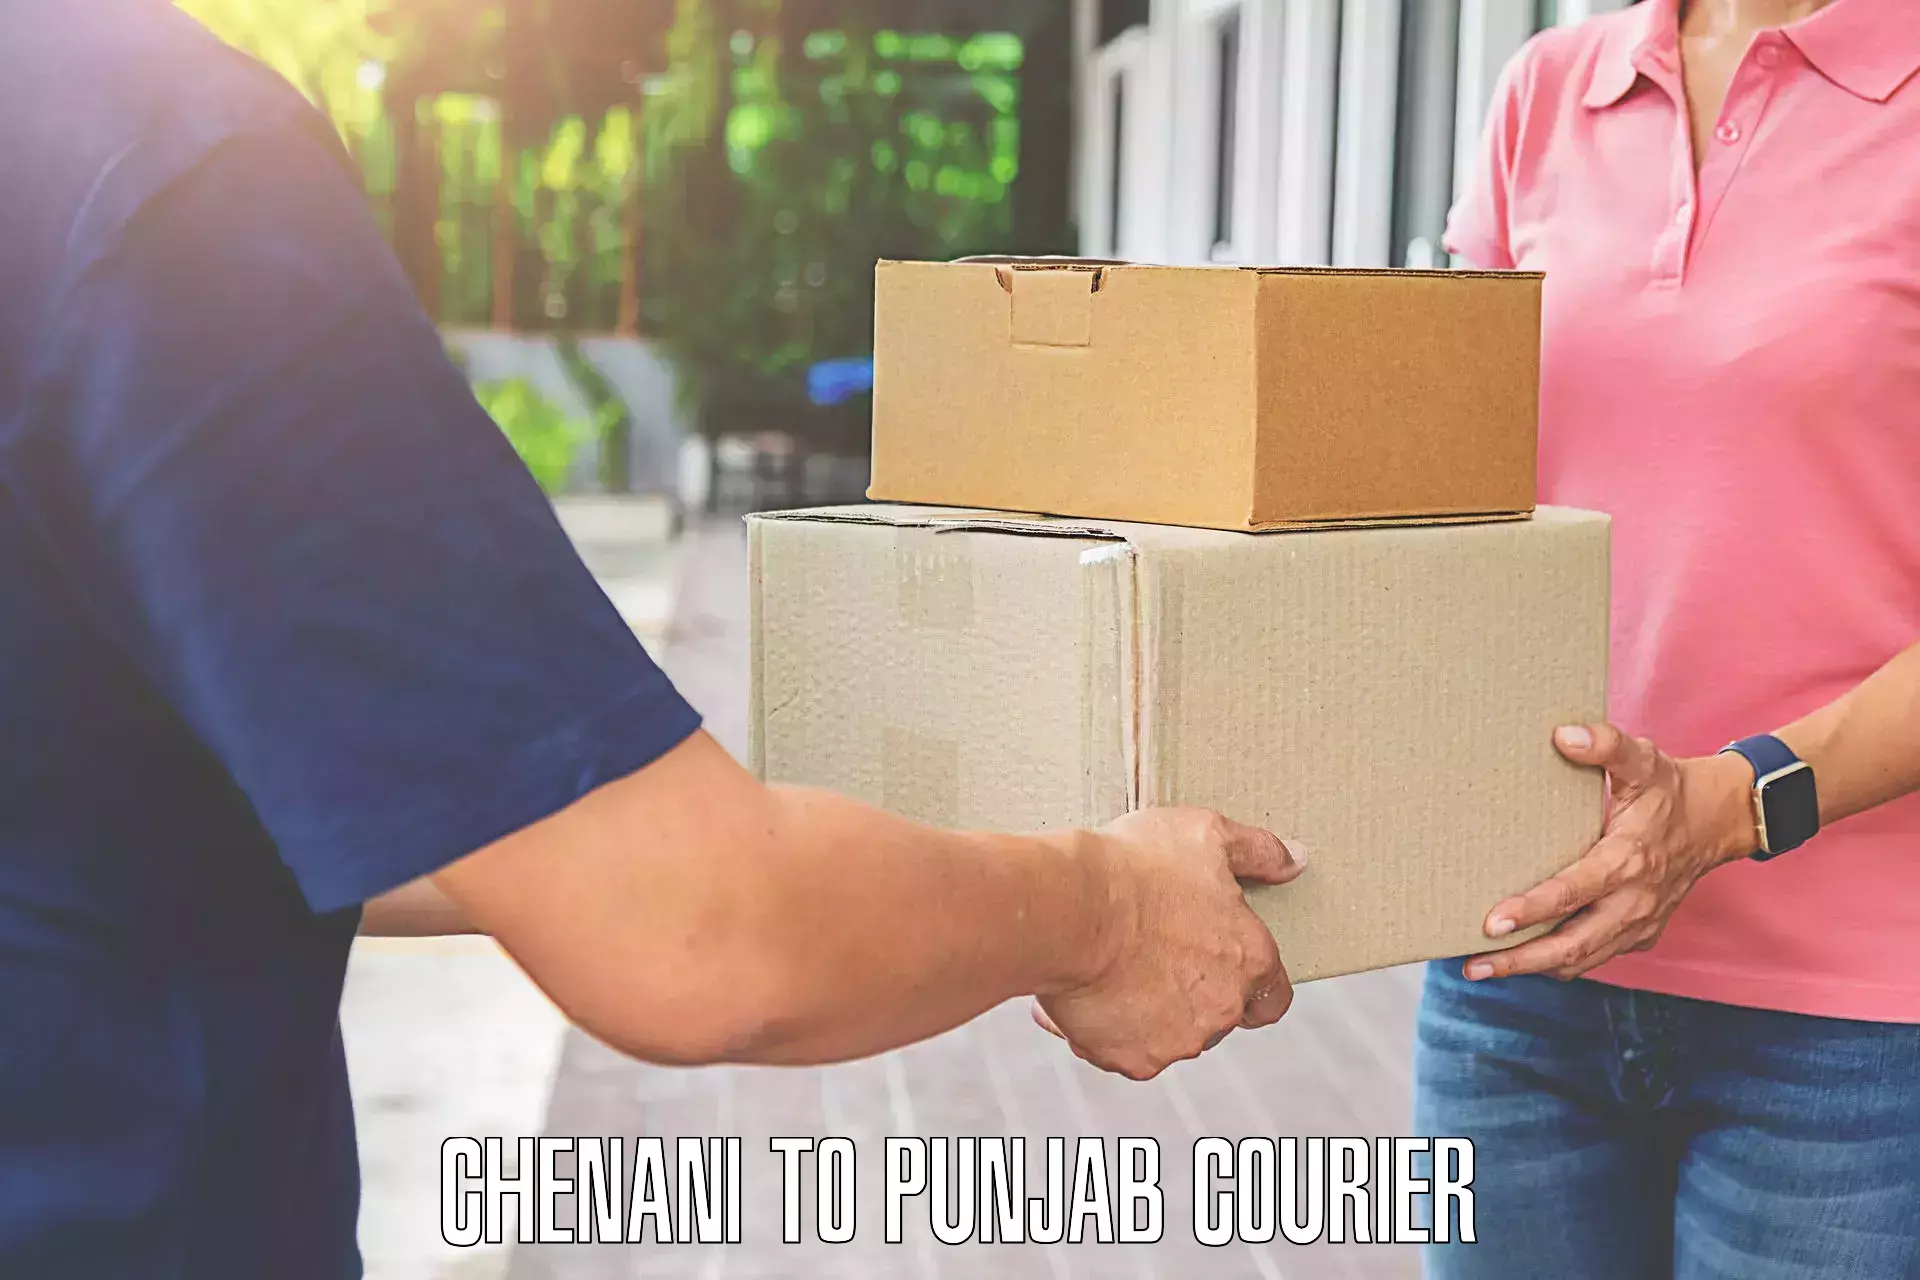 Luggage transport operations Chenani to Punjab